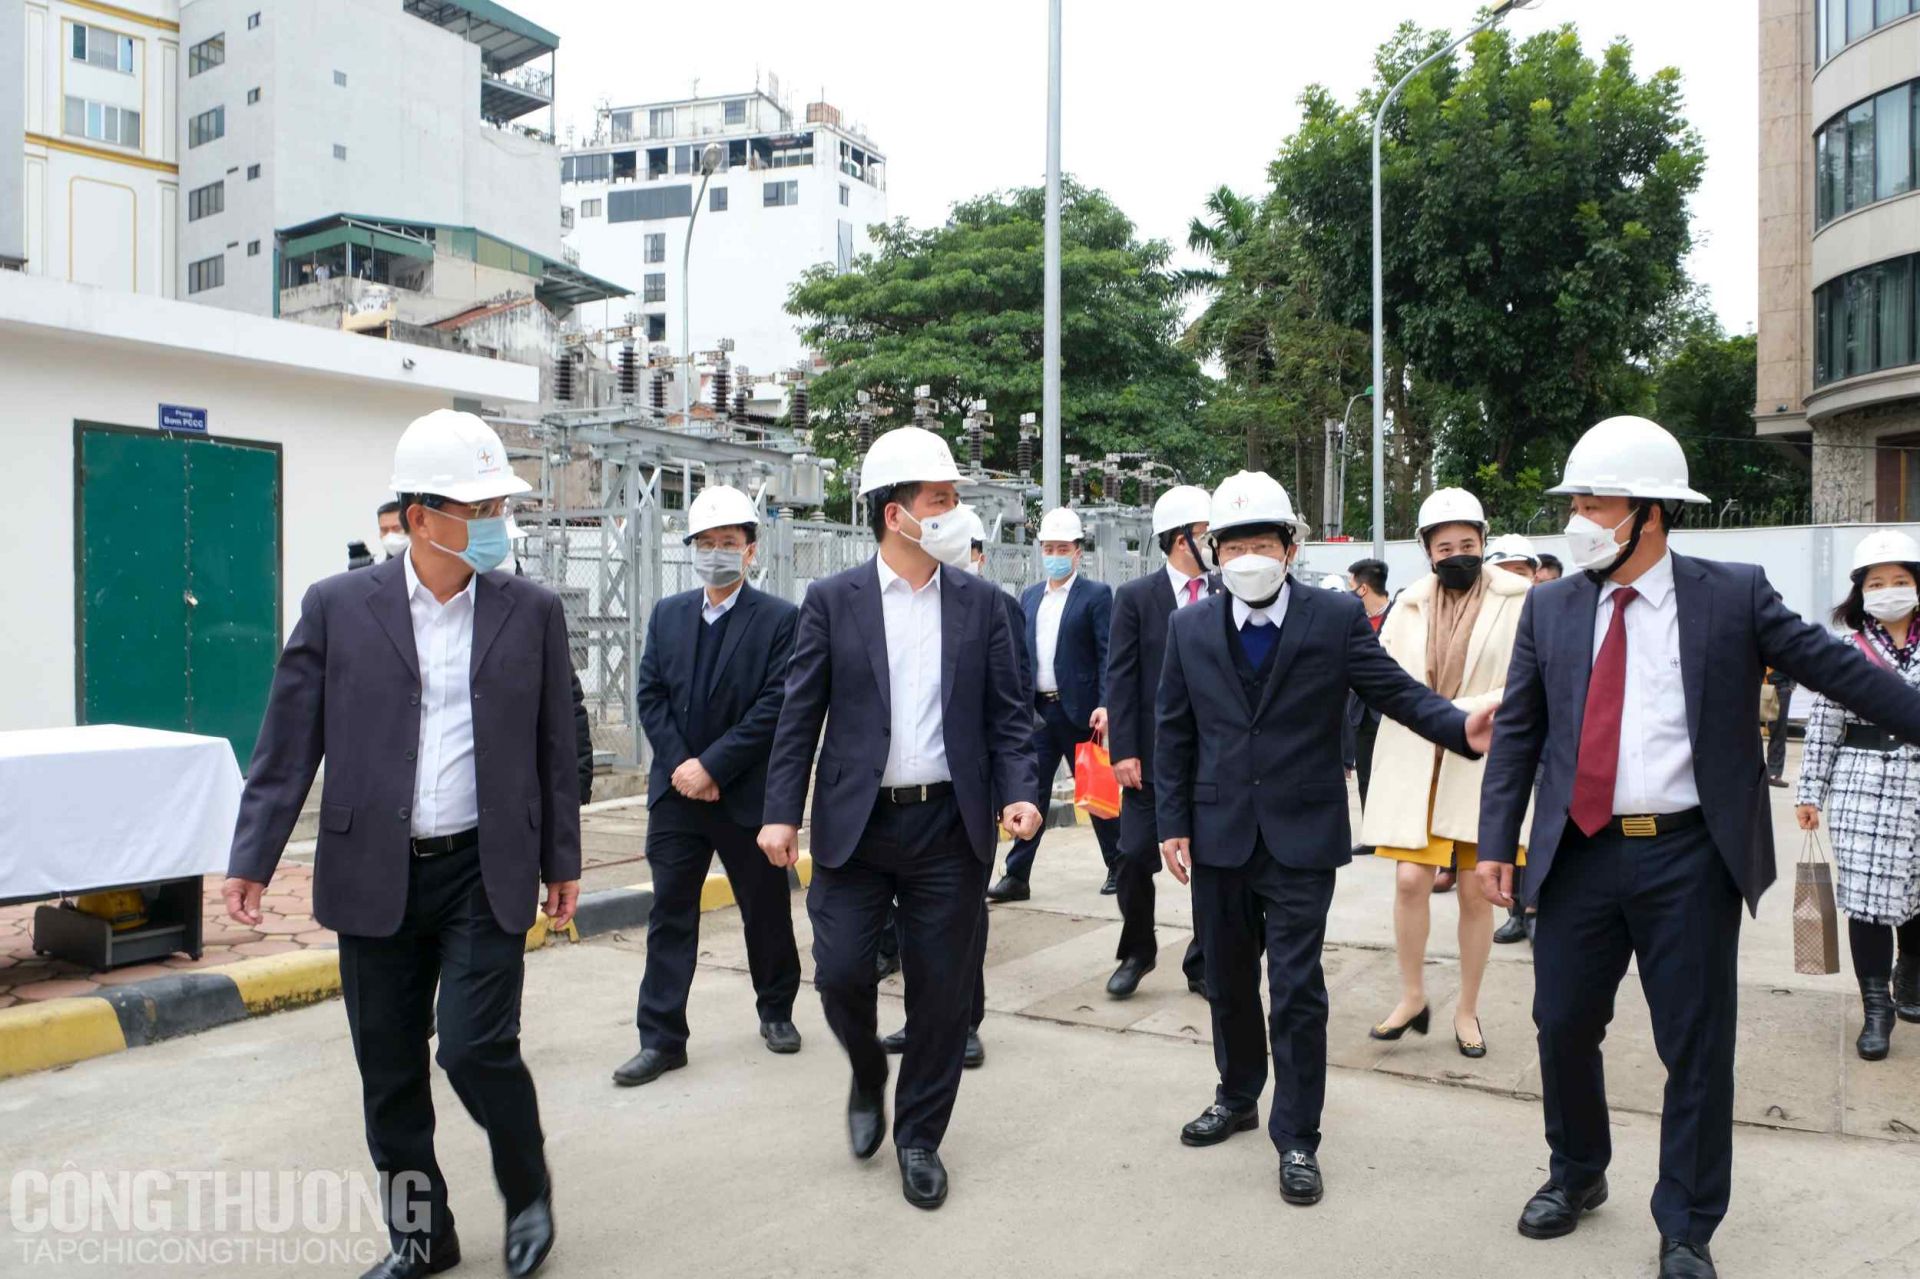 Bộ trưởng Nguyễn Hồng Diên cùng đoàn công tác Bộ Công Thương và Tập đoàn Điện lực Việt Nam (EVN) kiểm tra công tác cung ứng điện tại Trạm biến áp 110kV Yên Phụ (Hà Nội)